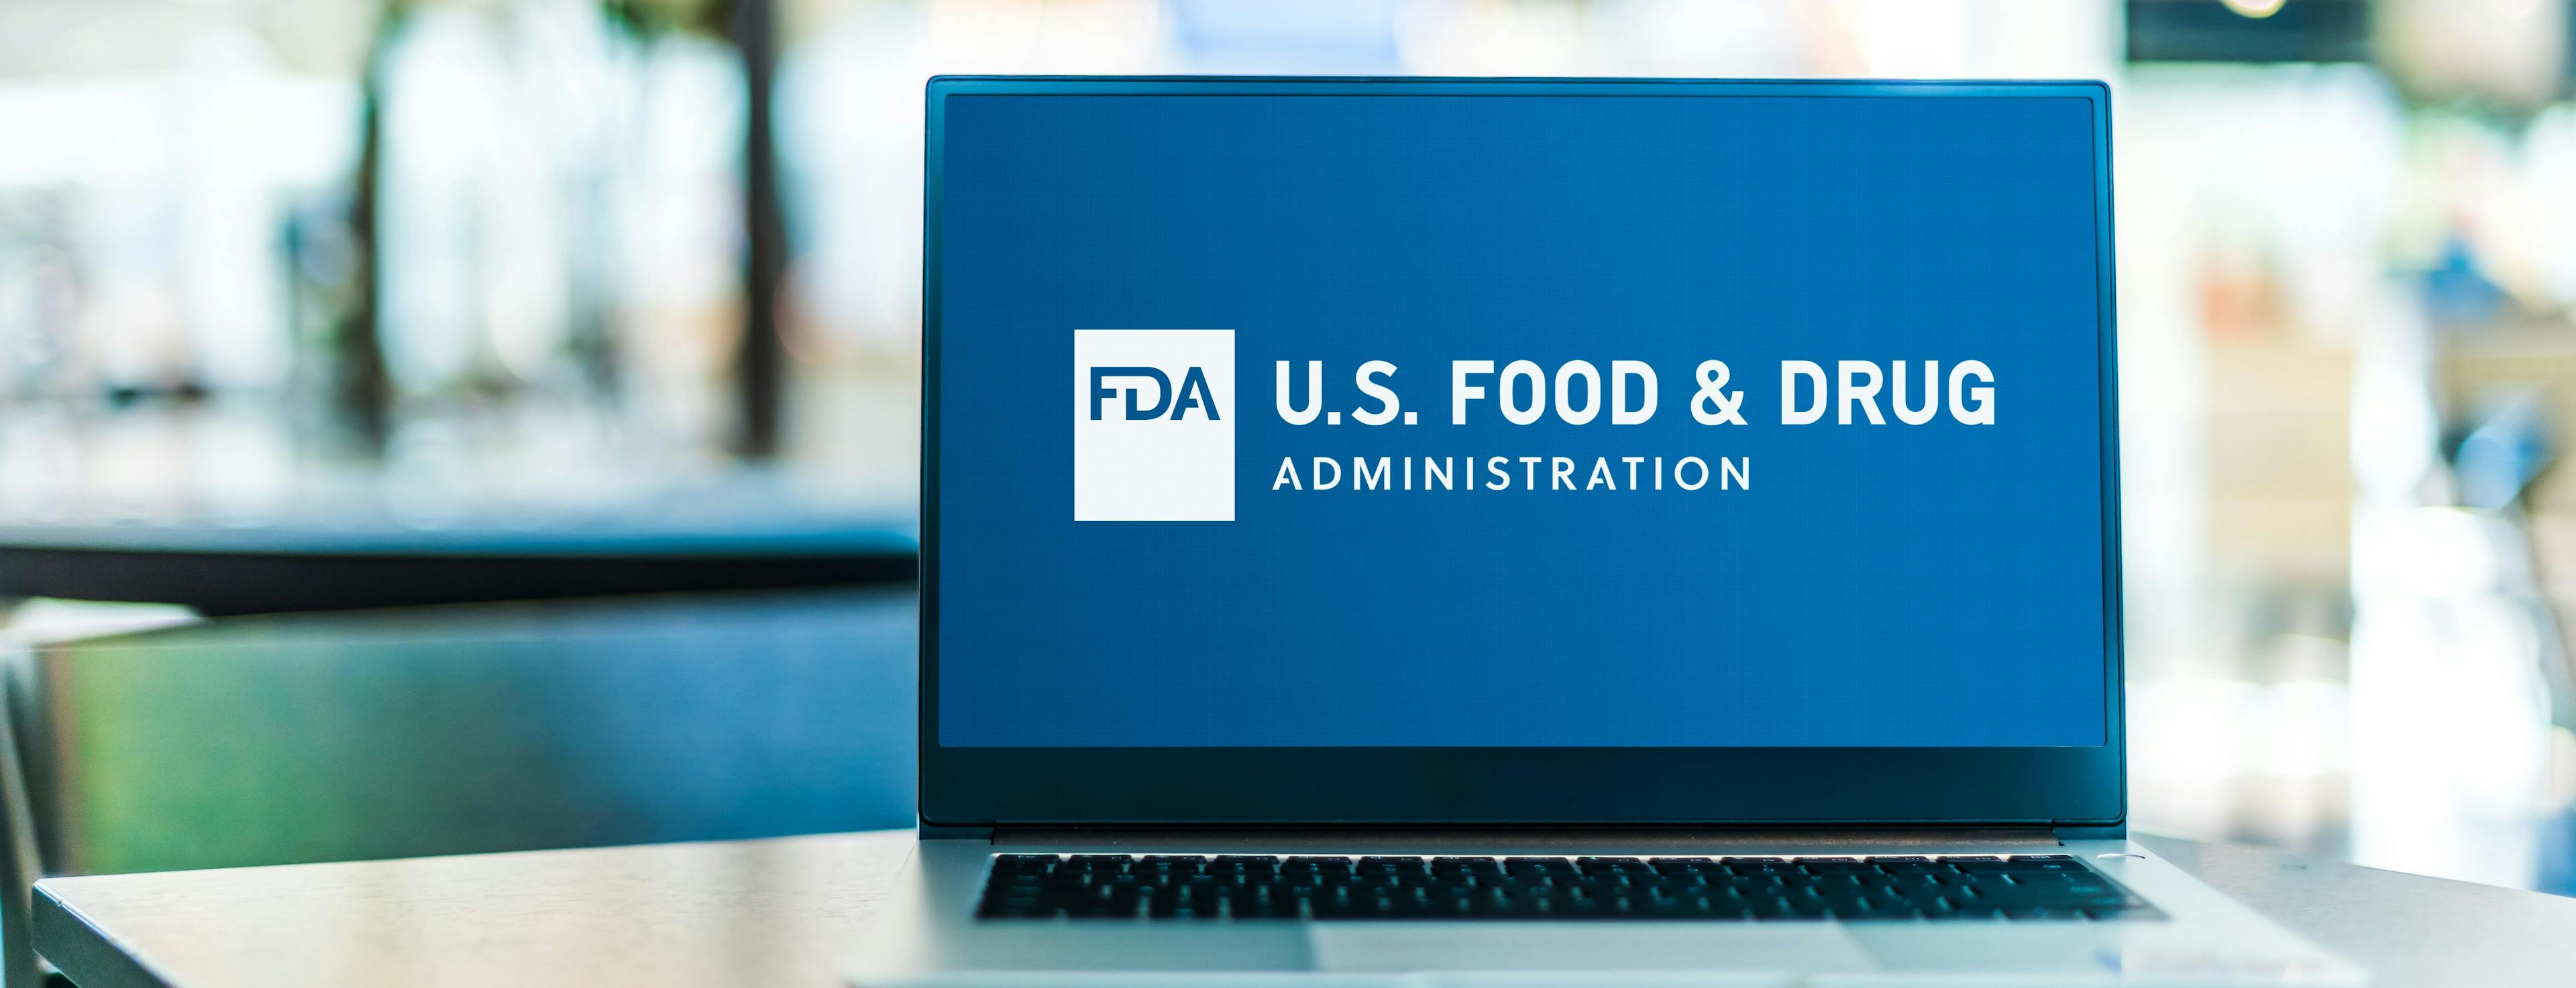 FDA finalizes GFI #120